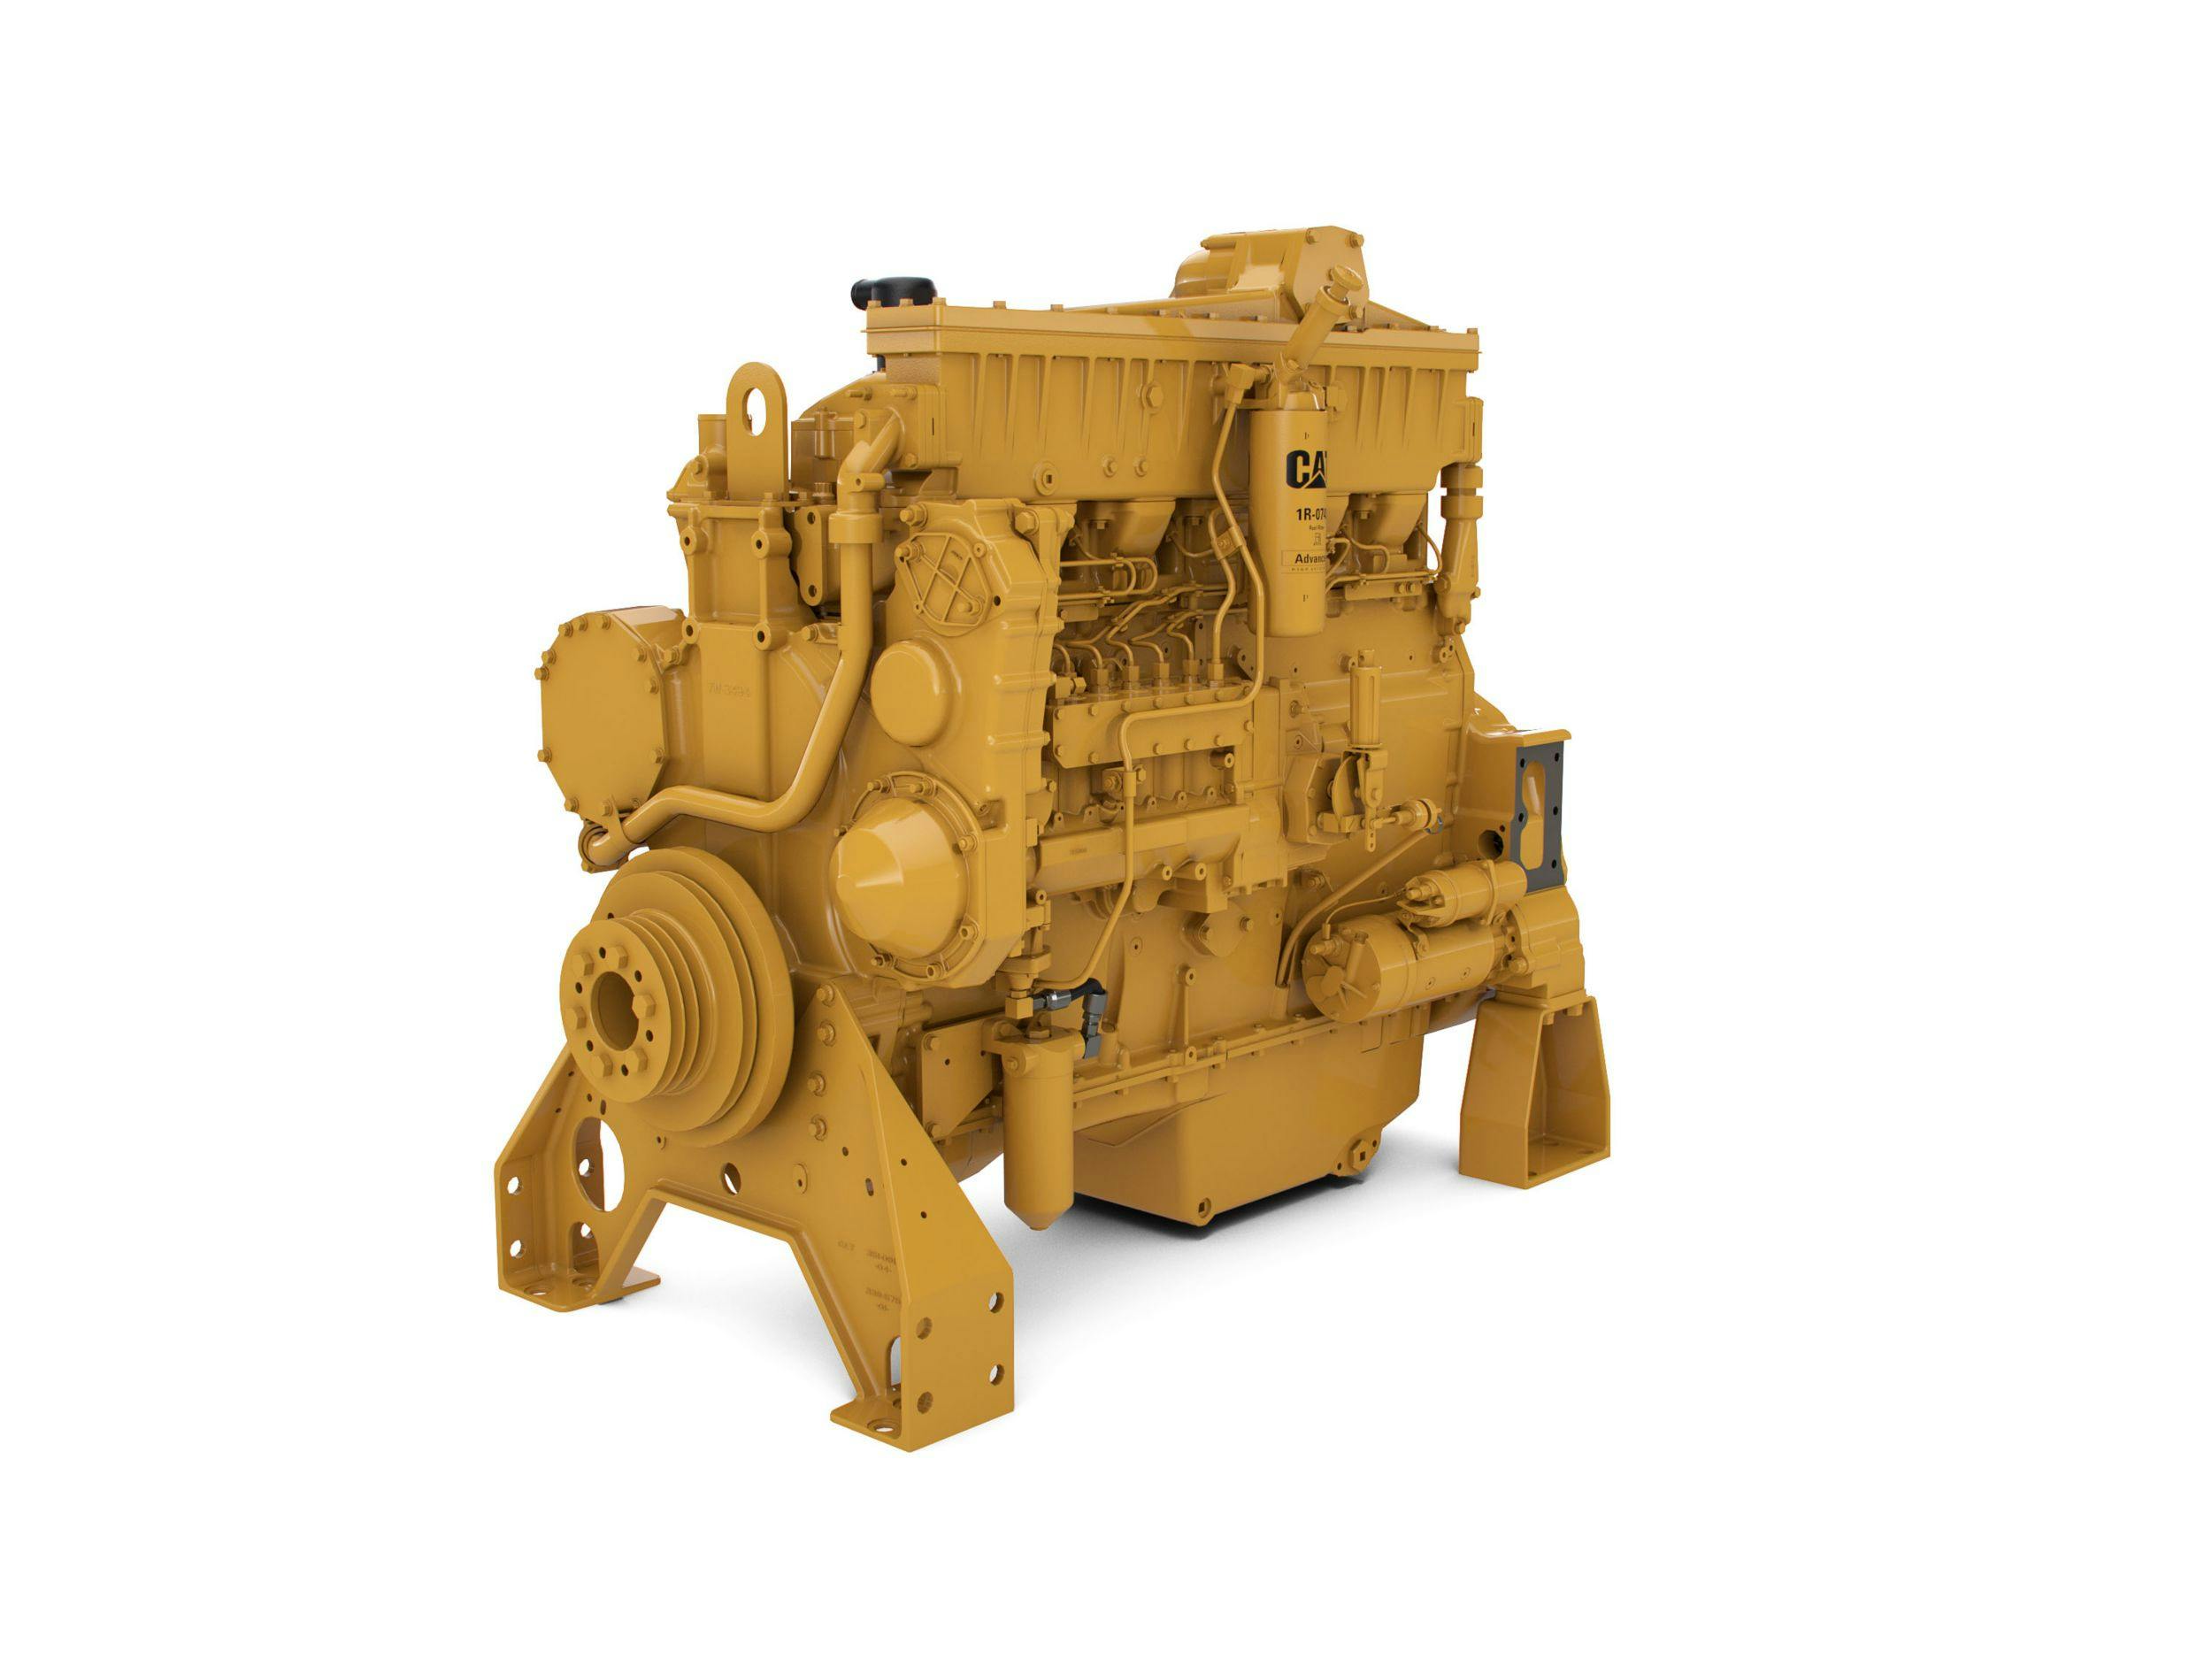 C0.5 Industrial Diesel Engine